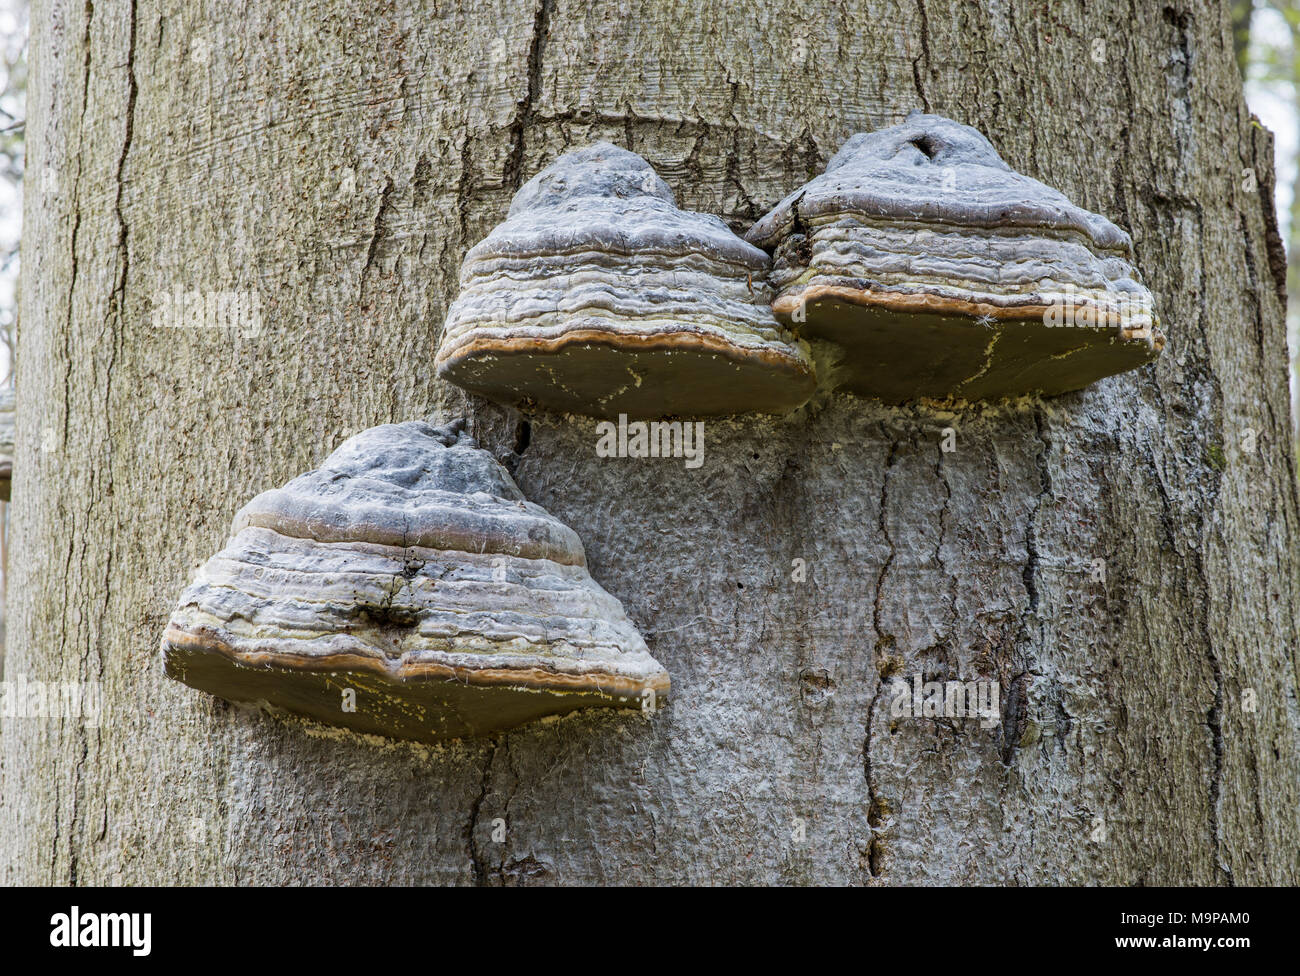 L'Amadou Fomes fomentarius (champignon) sur le hêtre commun (Fagus sylvatica), Parc national du Hainich, Thuringe, Allemagne Banque D'Images